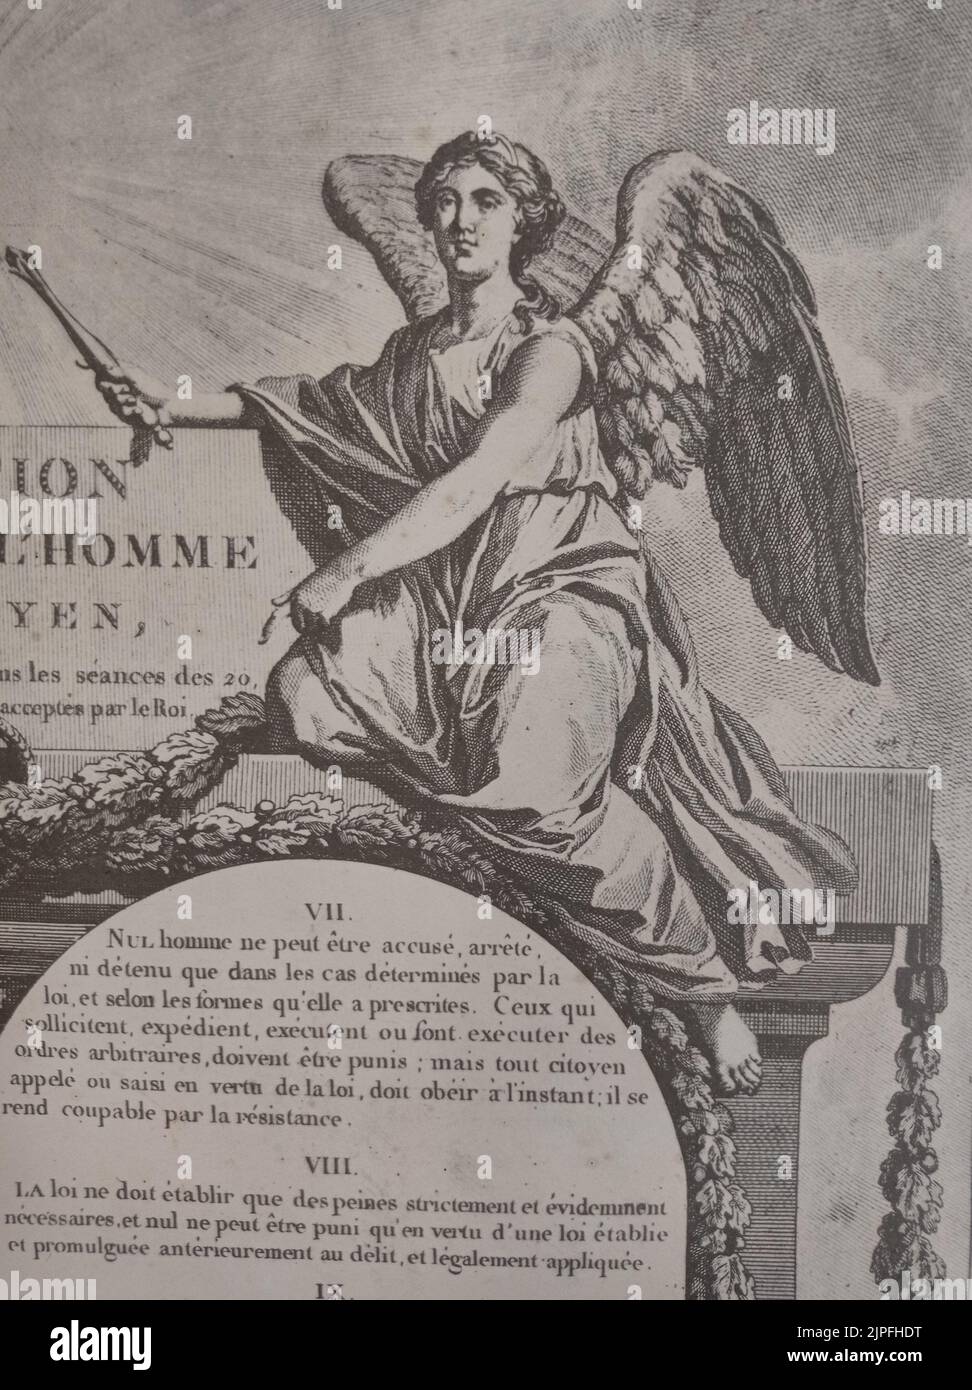 Image d'une femme-ange provenant d'une affiche Déclaration des droits de l'homme et du citoyen, Frankreich Stockfoto